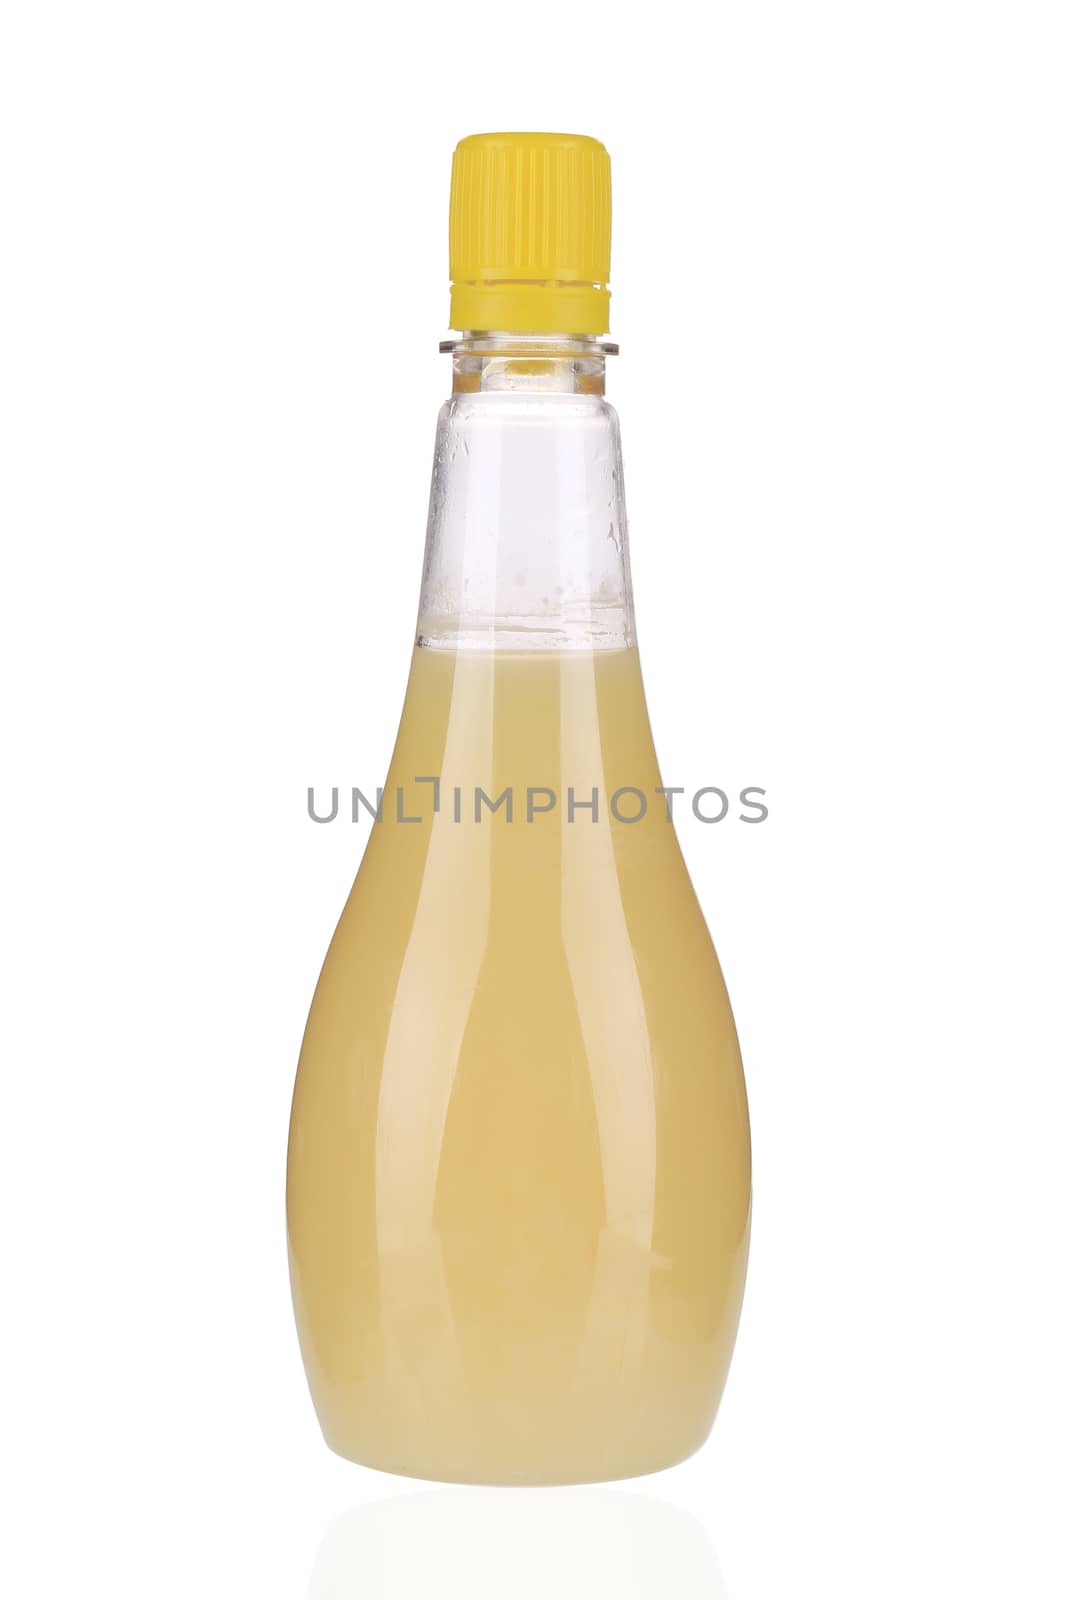 Bottle of lemon juice. Isolated on a white background.